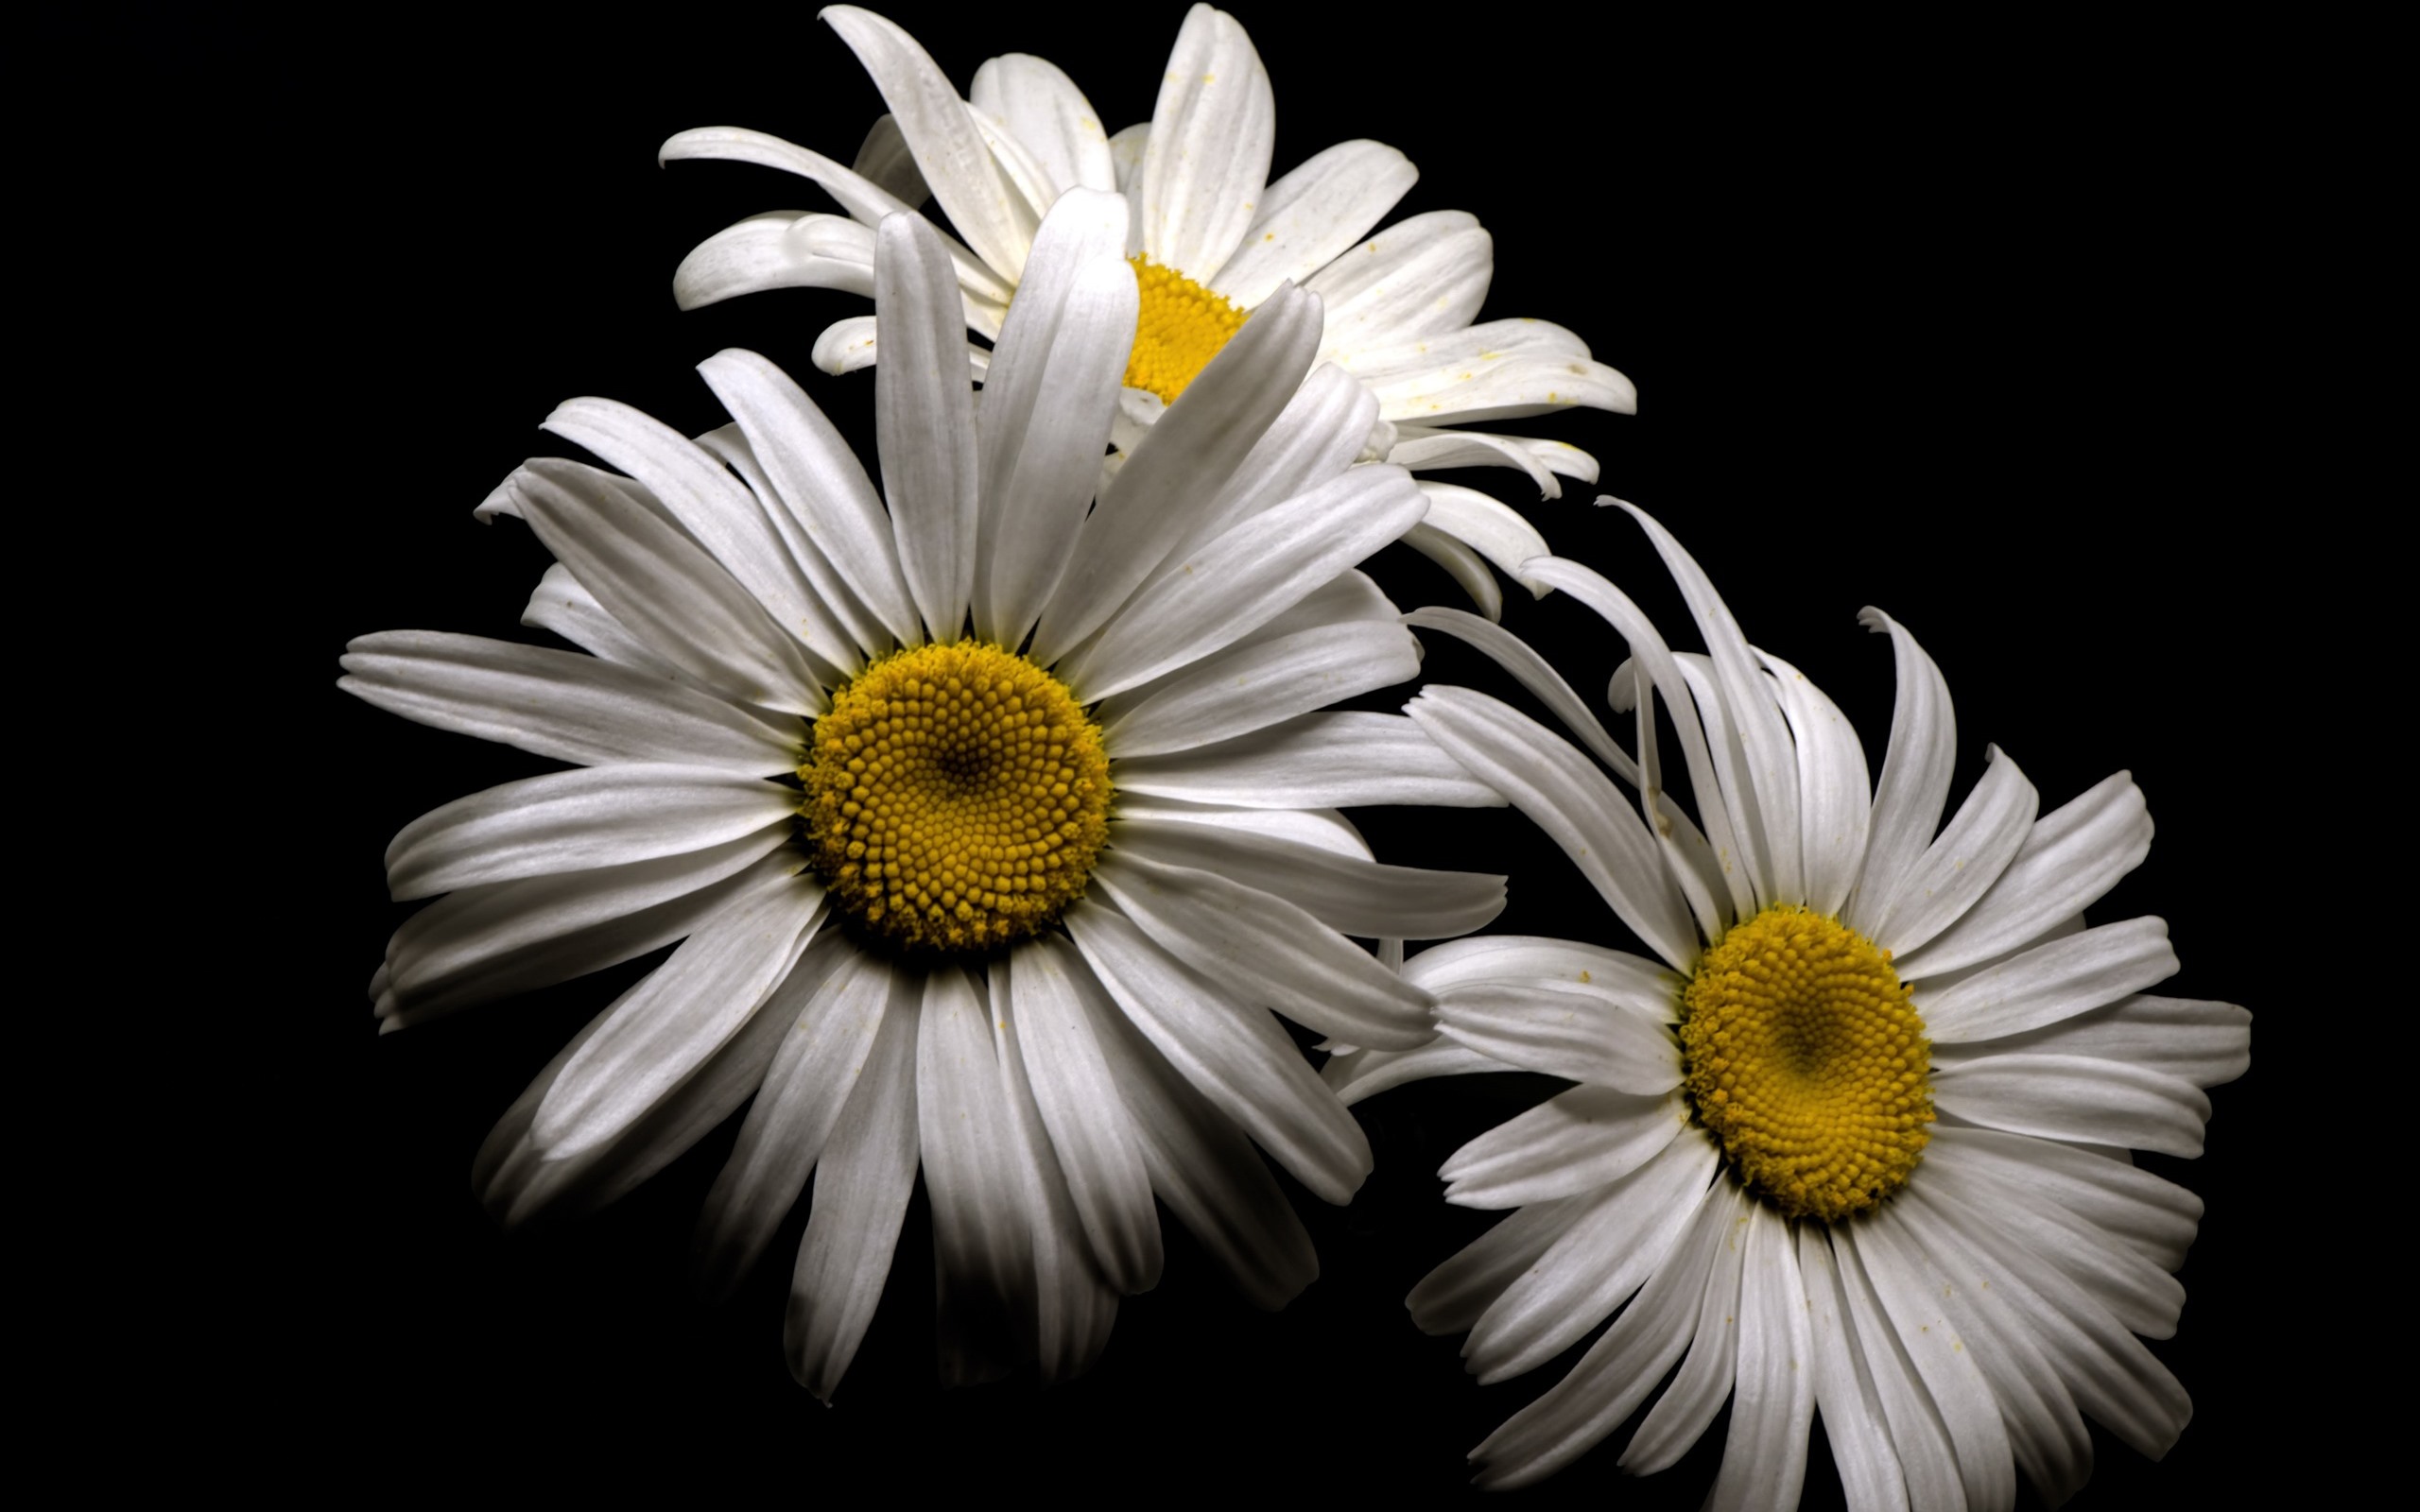 Hình ảnh hoa cúc trắng nền đen chất nhất